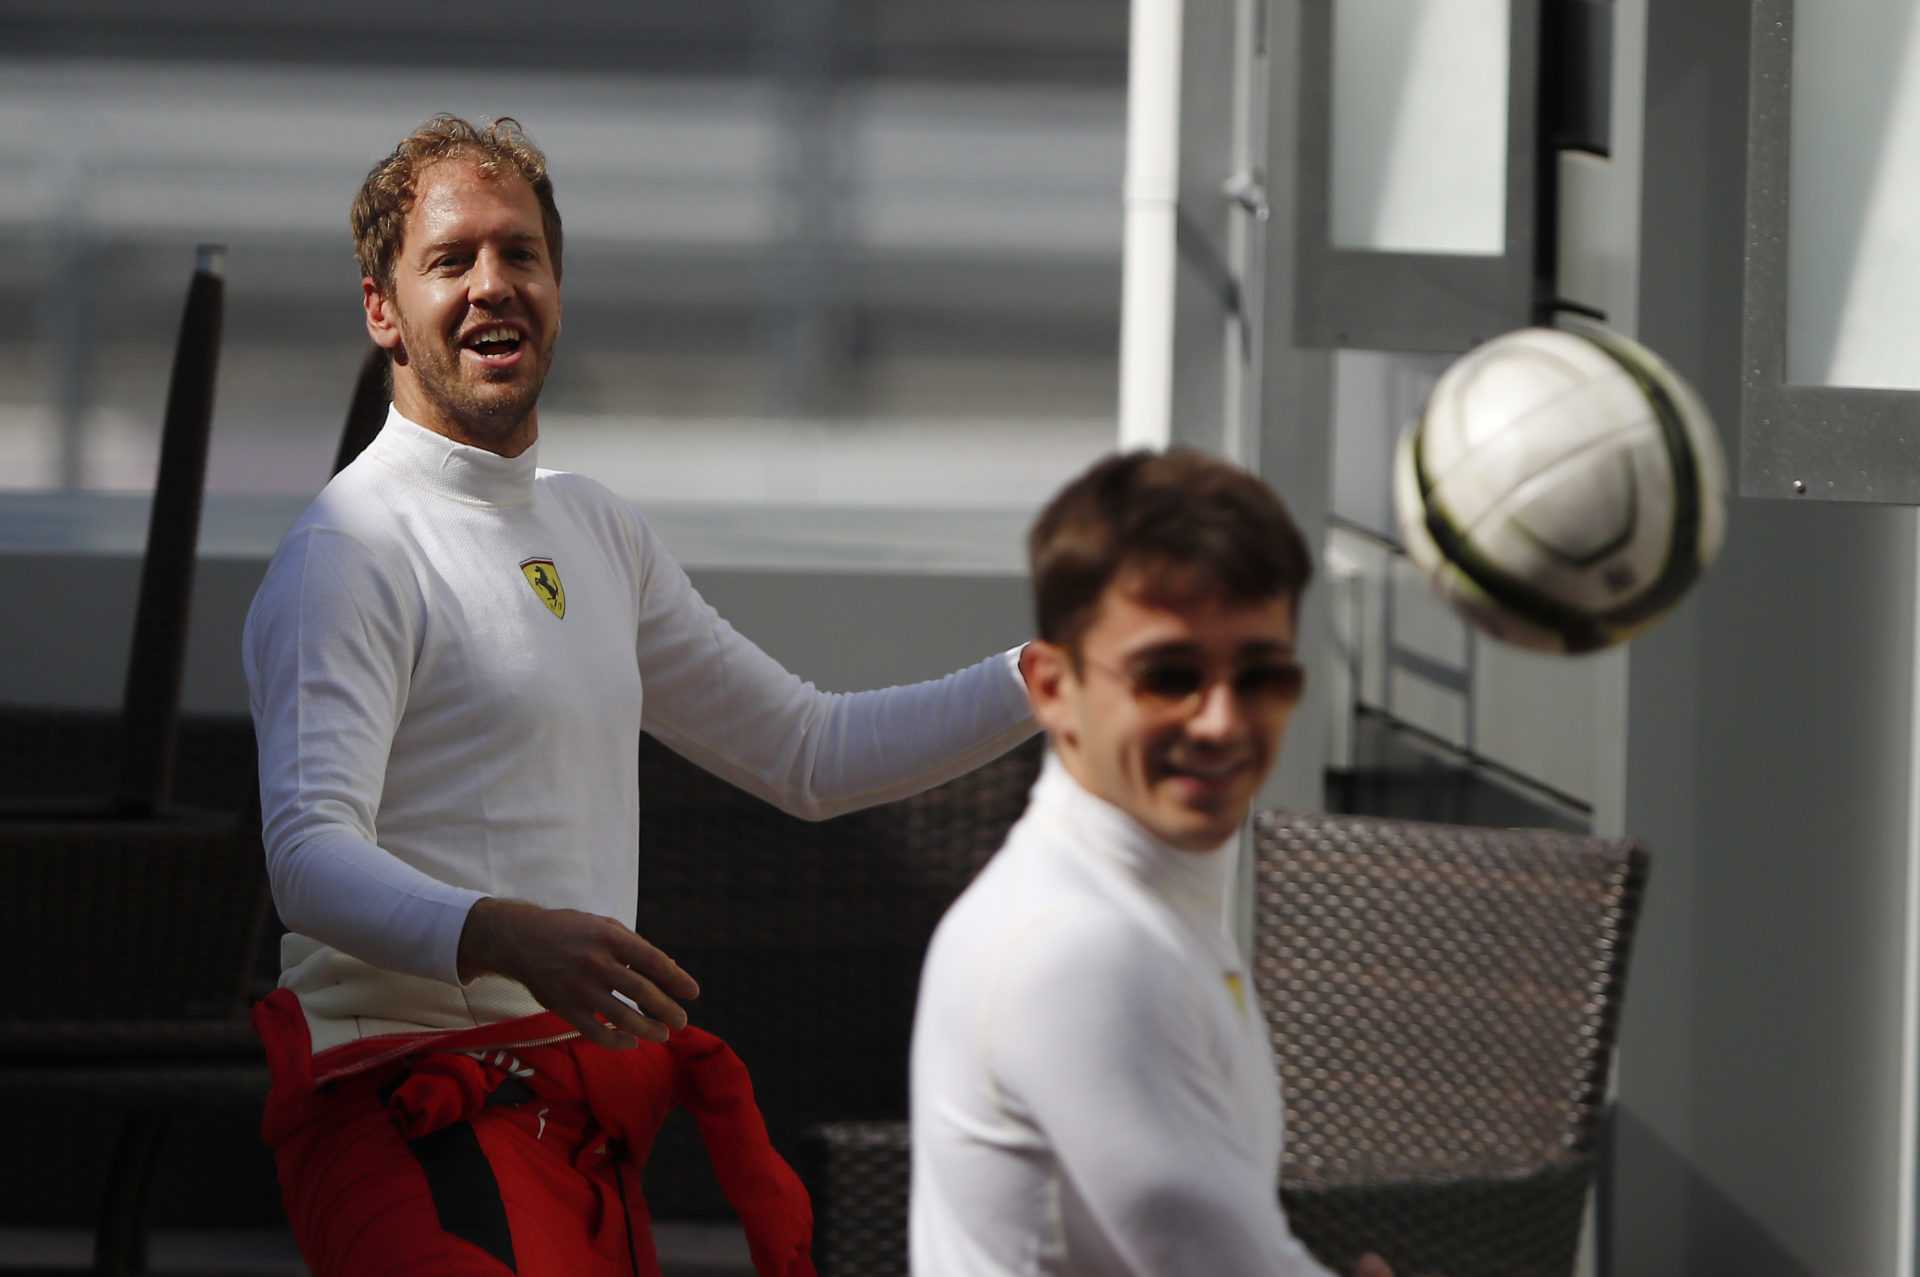 REGARDER: Sebastian Vettel prend un jab effronté à l'âge de Leclerc tout en lui souhaitant son anniversaire